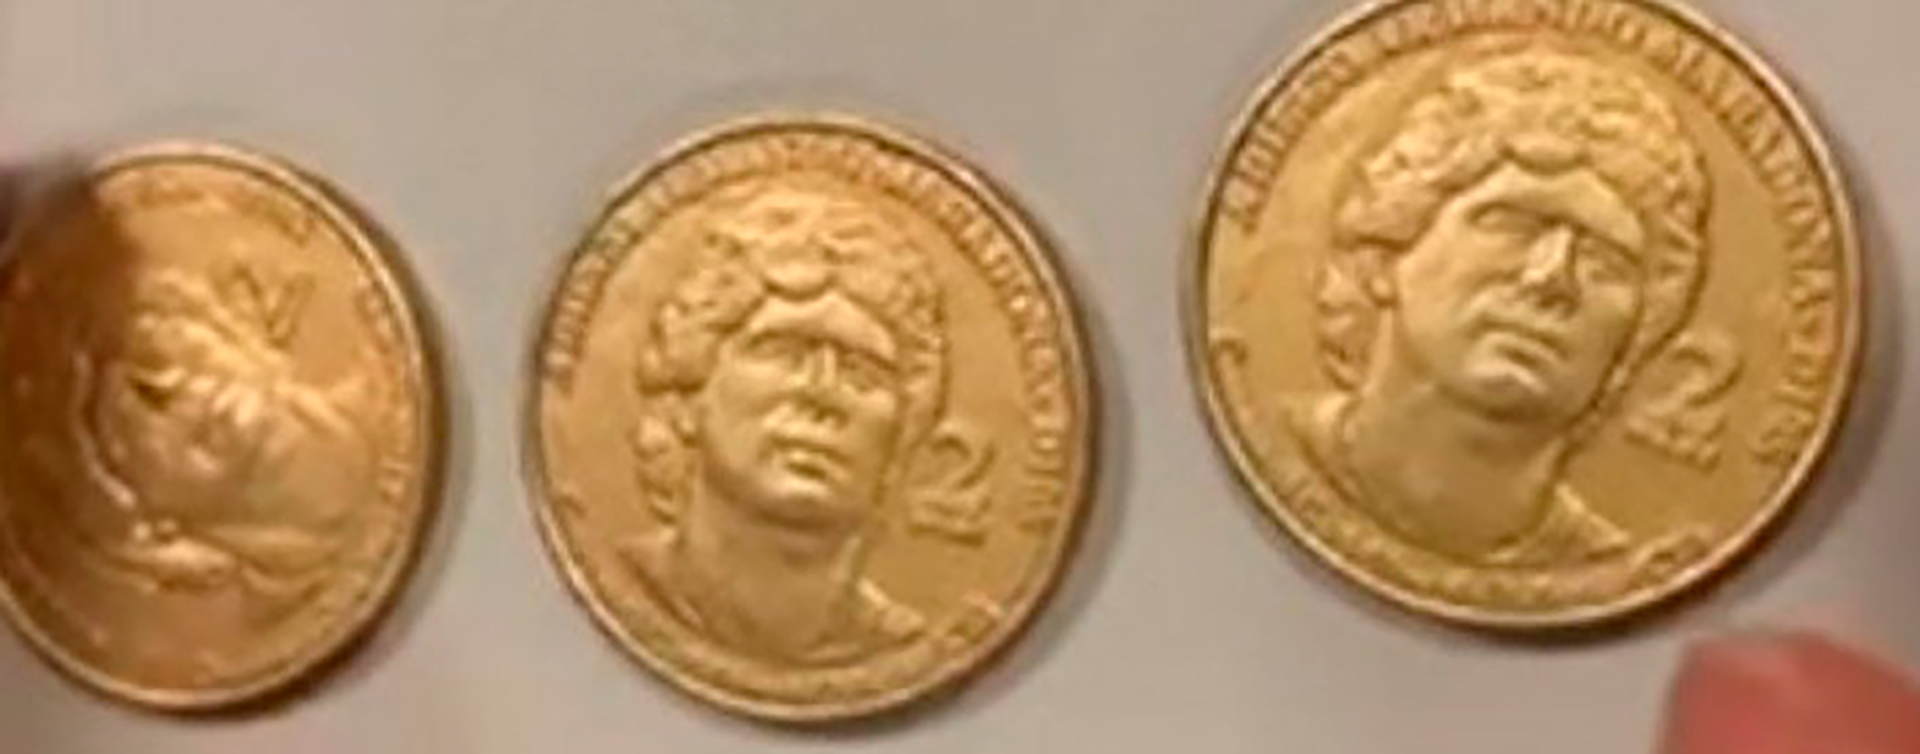 En el sur de Italia se acuñaron 2.000 monedas con la imagen del Diez